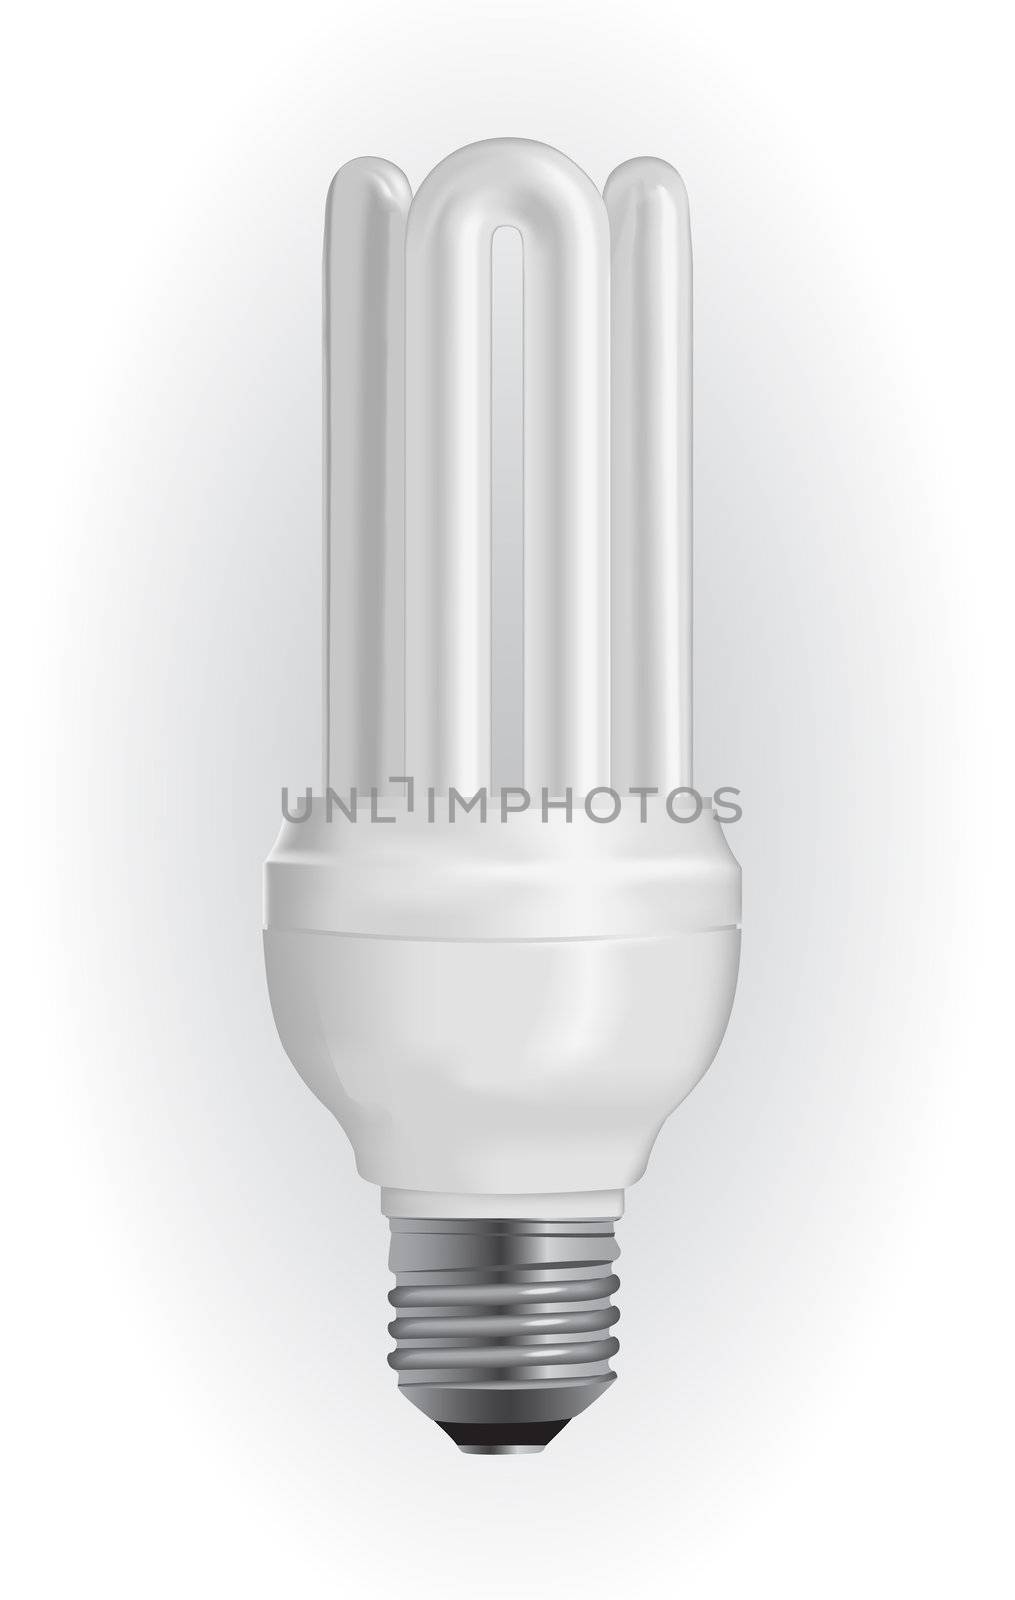 Energy saving light bulb by smoki